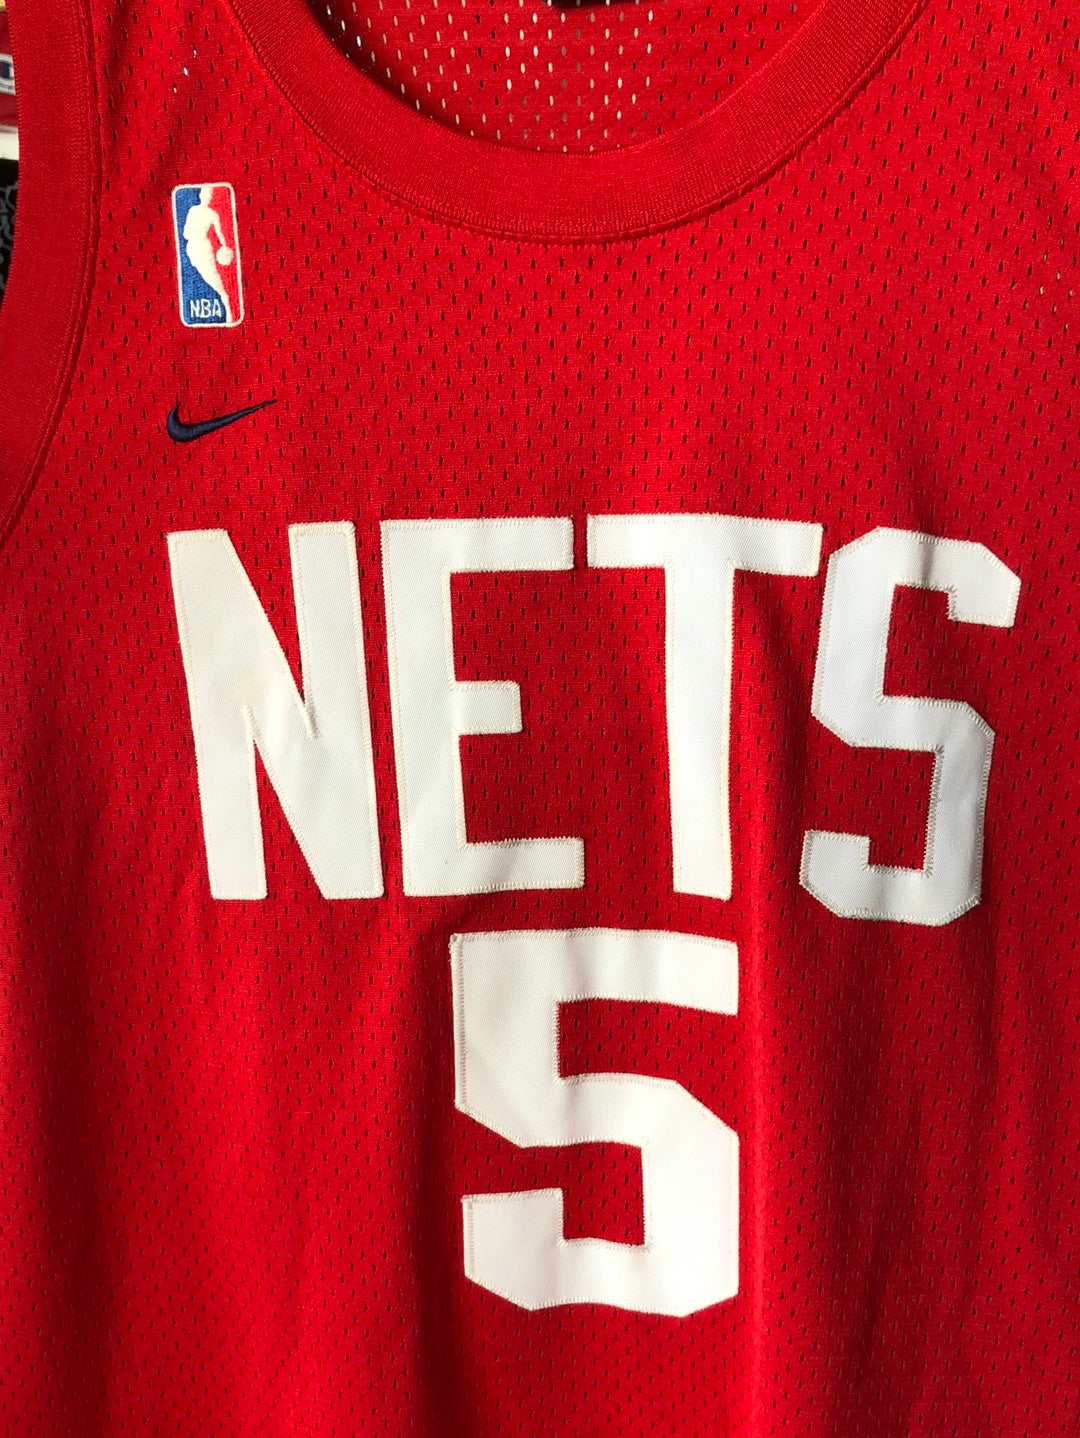 2002 Jason Kidd New Jersey Nets Nike Swingman NBA Jersey Youth